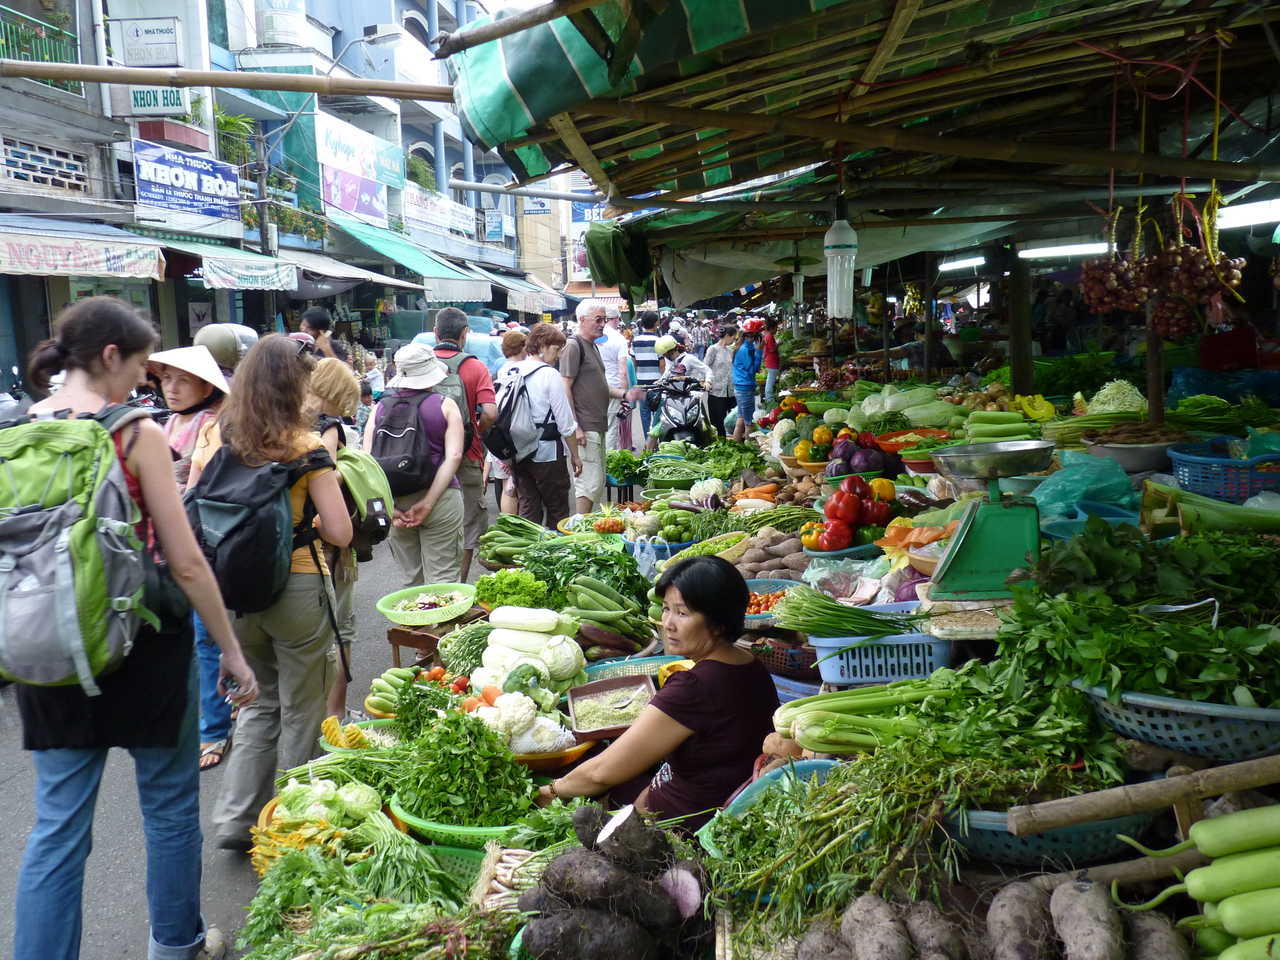 Marché local au Vietnam